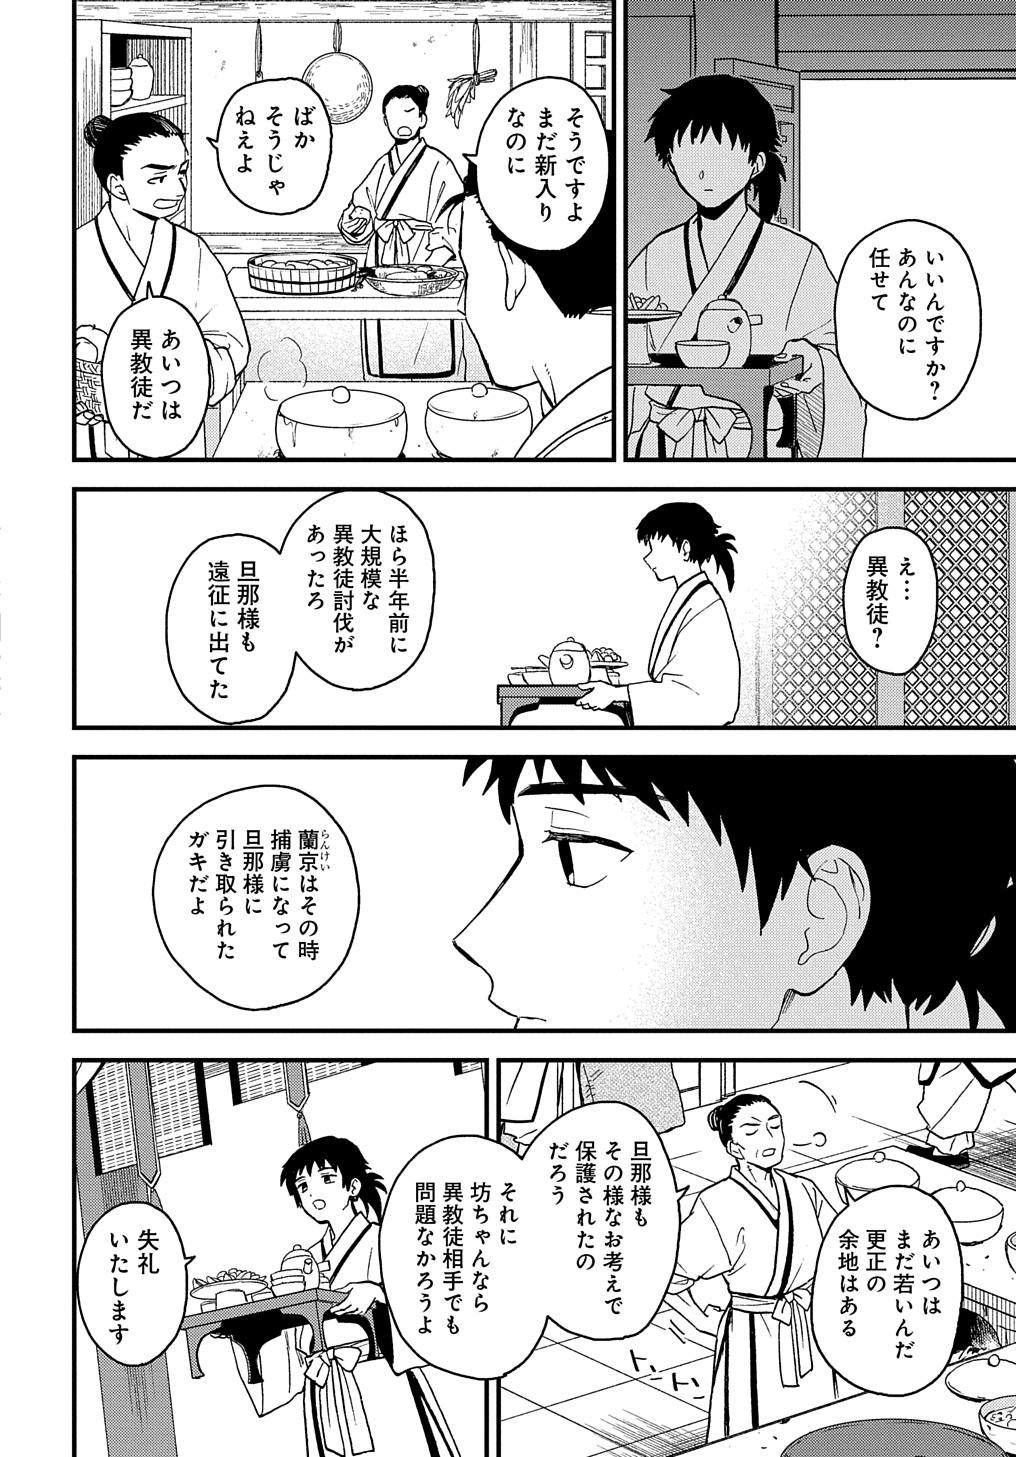 Misasagi no Ou - Chapter 2 - Page 3